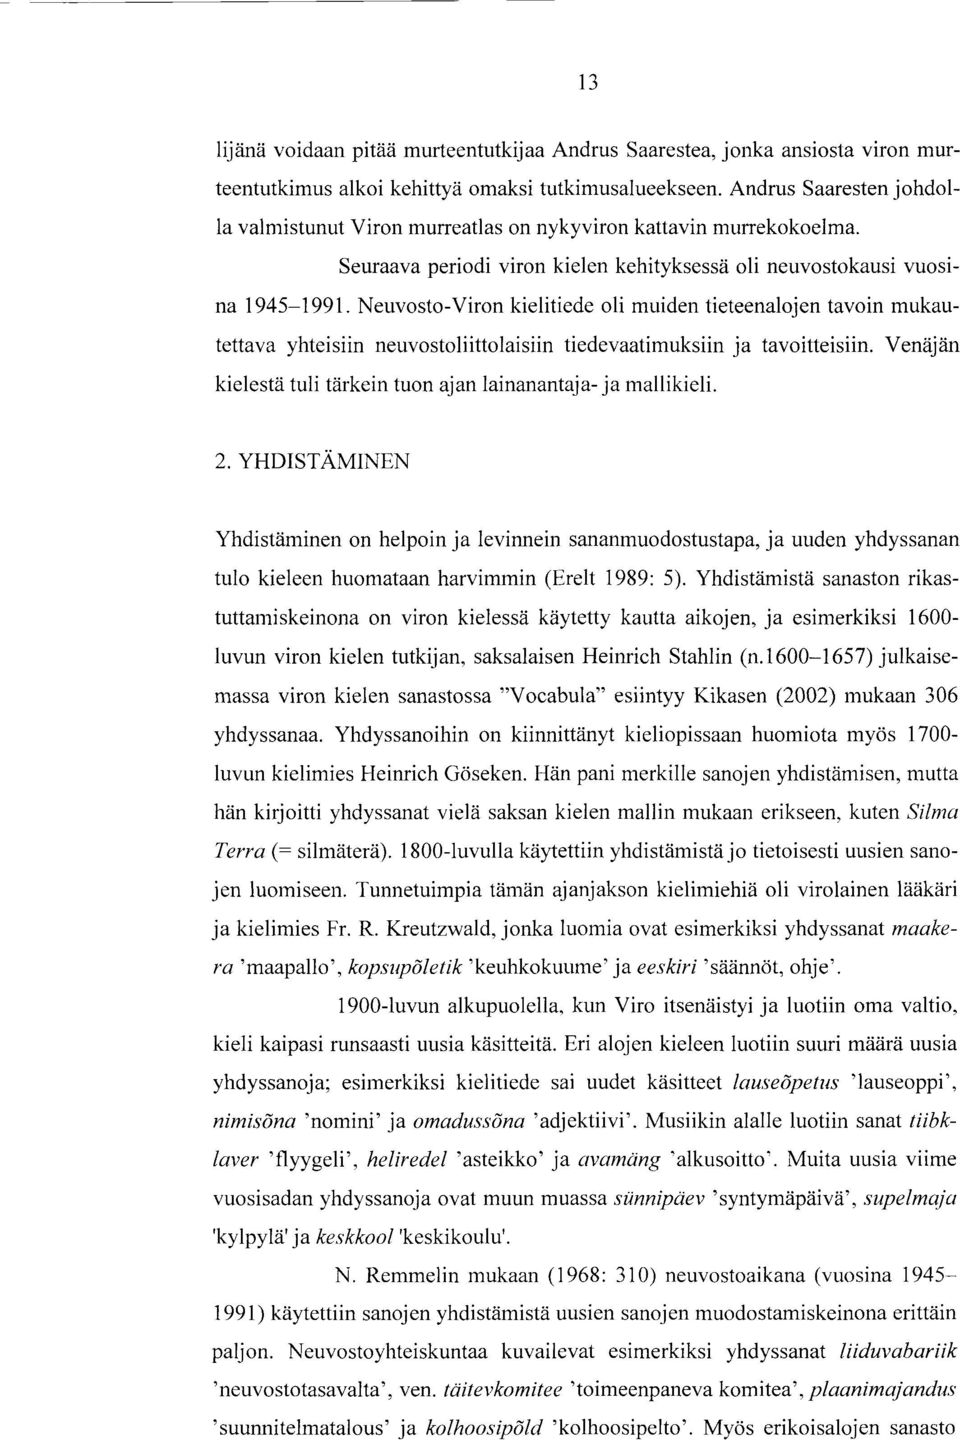 Neuvosto-Viron kielitiede oli muiden tieteenalojen tavoin mukautettava yhteisiin neuvostoliittolaisiin tiedevaatimuksiin ja tavoitteisiin.